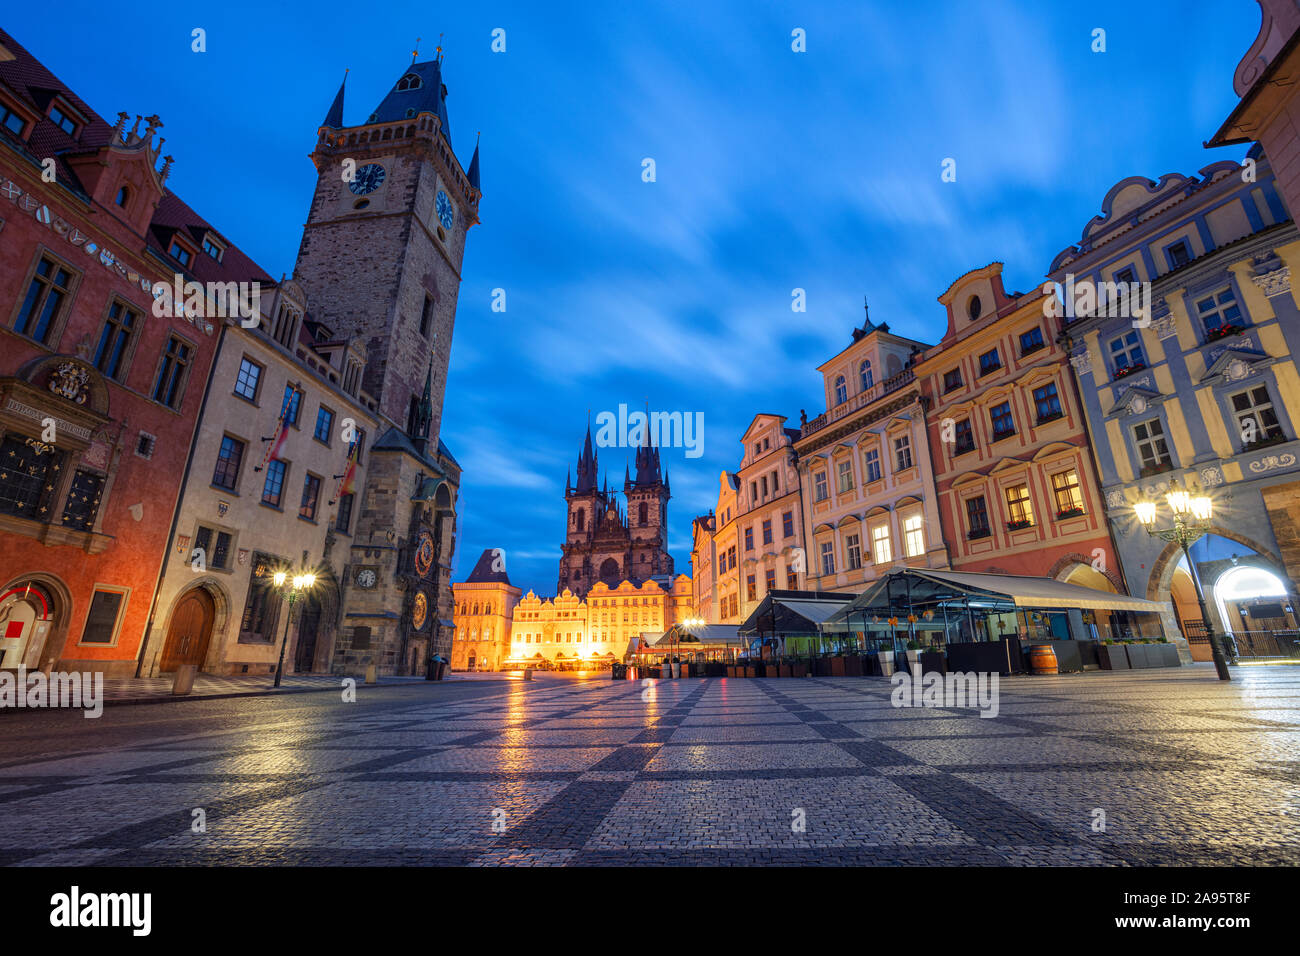 Praga, República Checa. Imagen del paisaje urbano de la famosa Plaza de la Ciudad Vieja con el Reloj Astronómico de Praga y del Ayuntamiento de la Ciudad Vieja durante la hora azul crepúsculo. Foto de stock